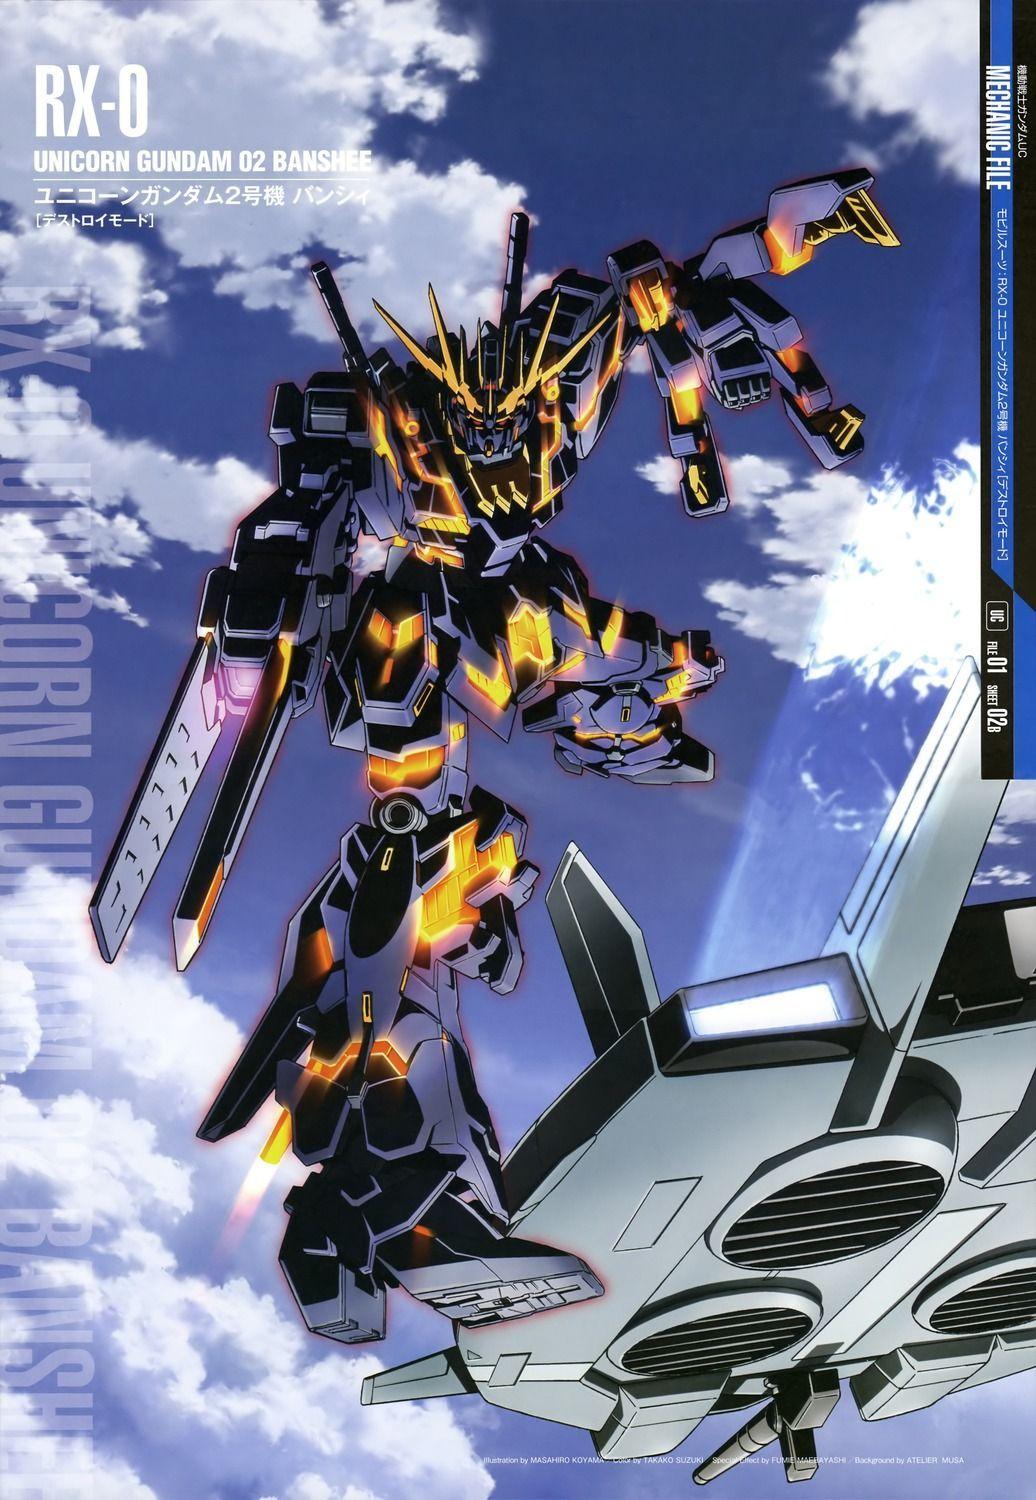 Mobile Suit Gundam Mechanic File Size Image Part 5